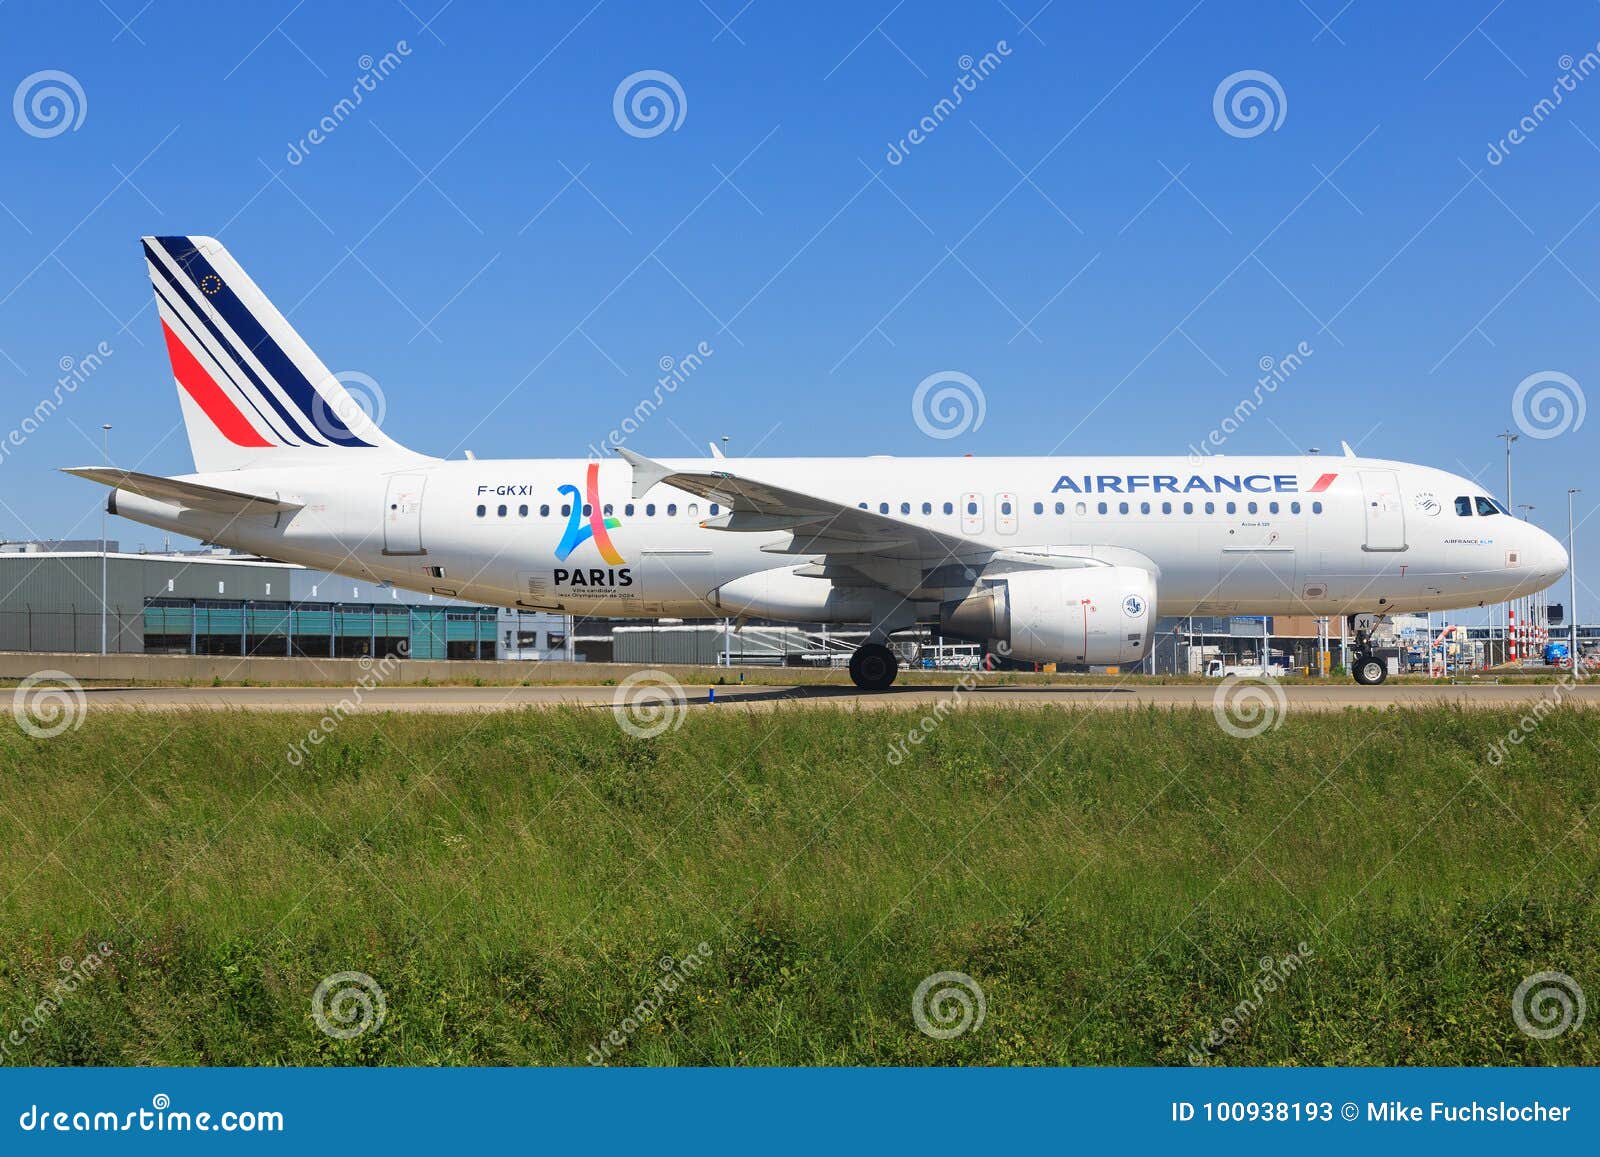 法国飞巴黎飞上海波音777客机因驾驶舱烟雾紧急降落俄罗斯 - 航空要闻 - 航空圈——航空信息、大数据平台